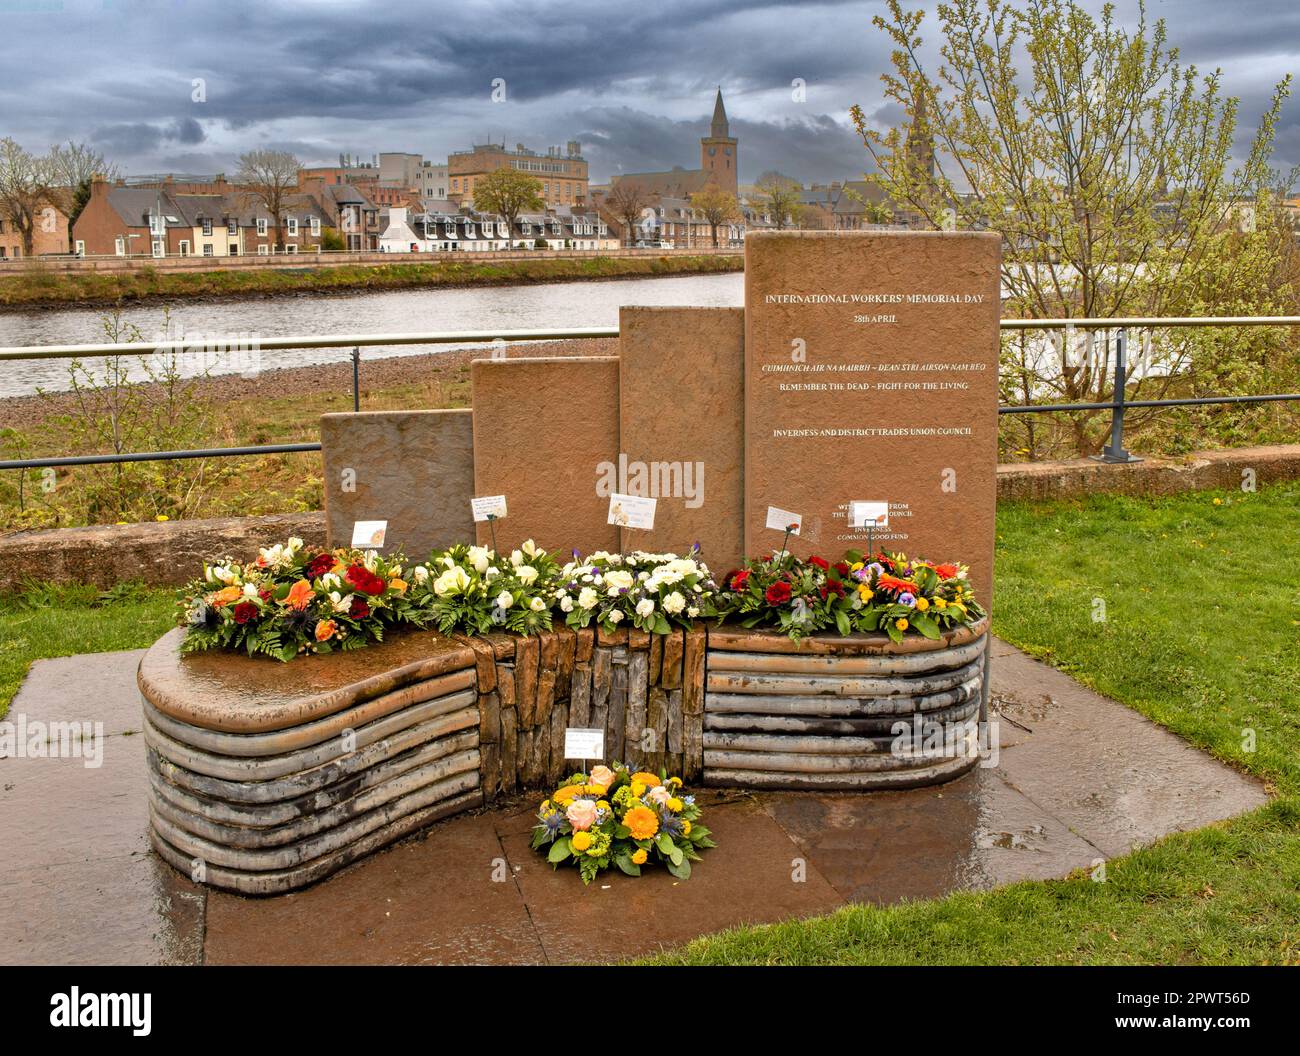 Inverness Escocia junto a las losas de piedra del río Ness y los homenajes florales para el Día Internacional de los Trabajadores 28th de abril Foto de stock